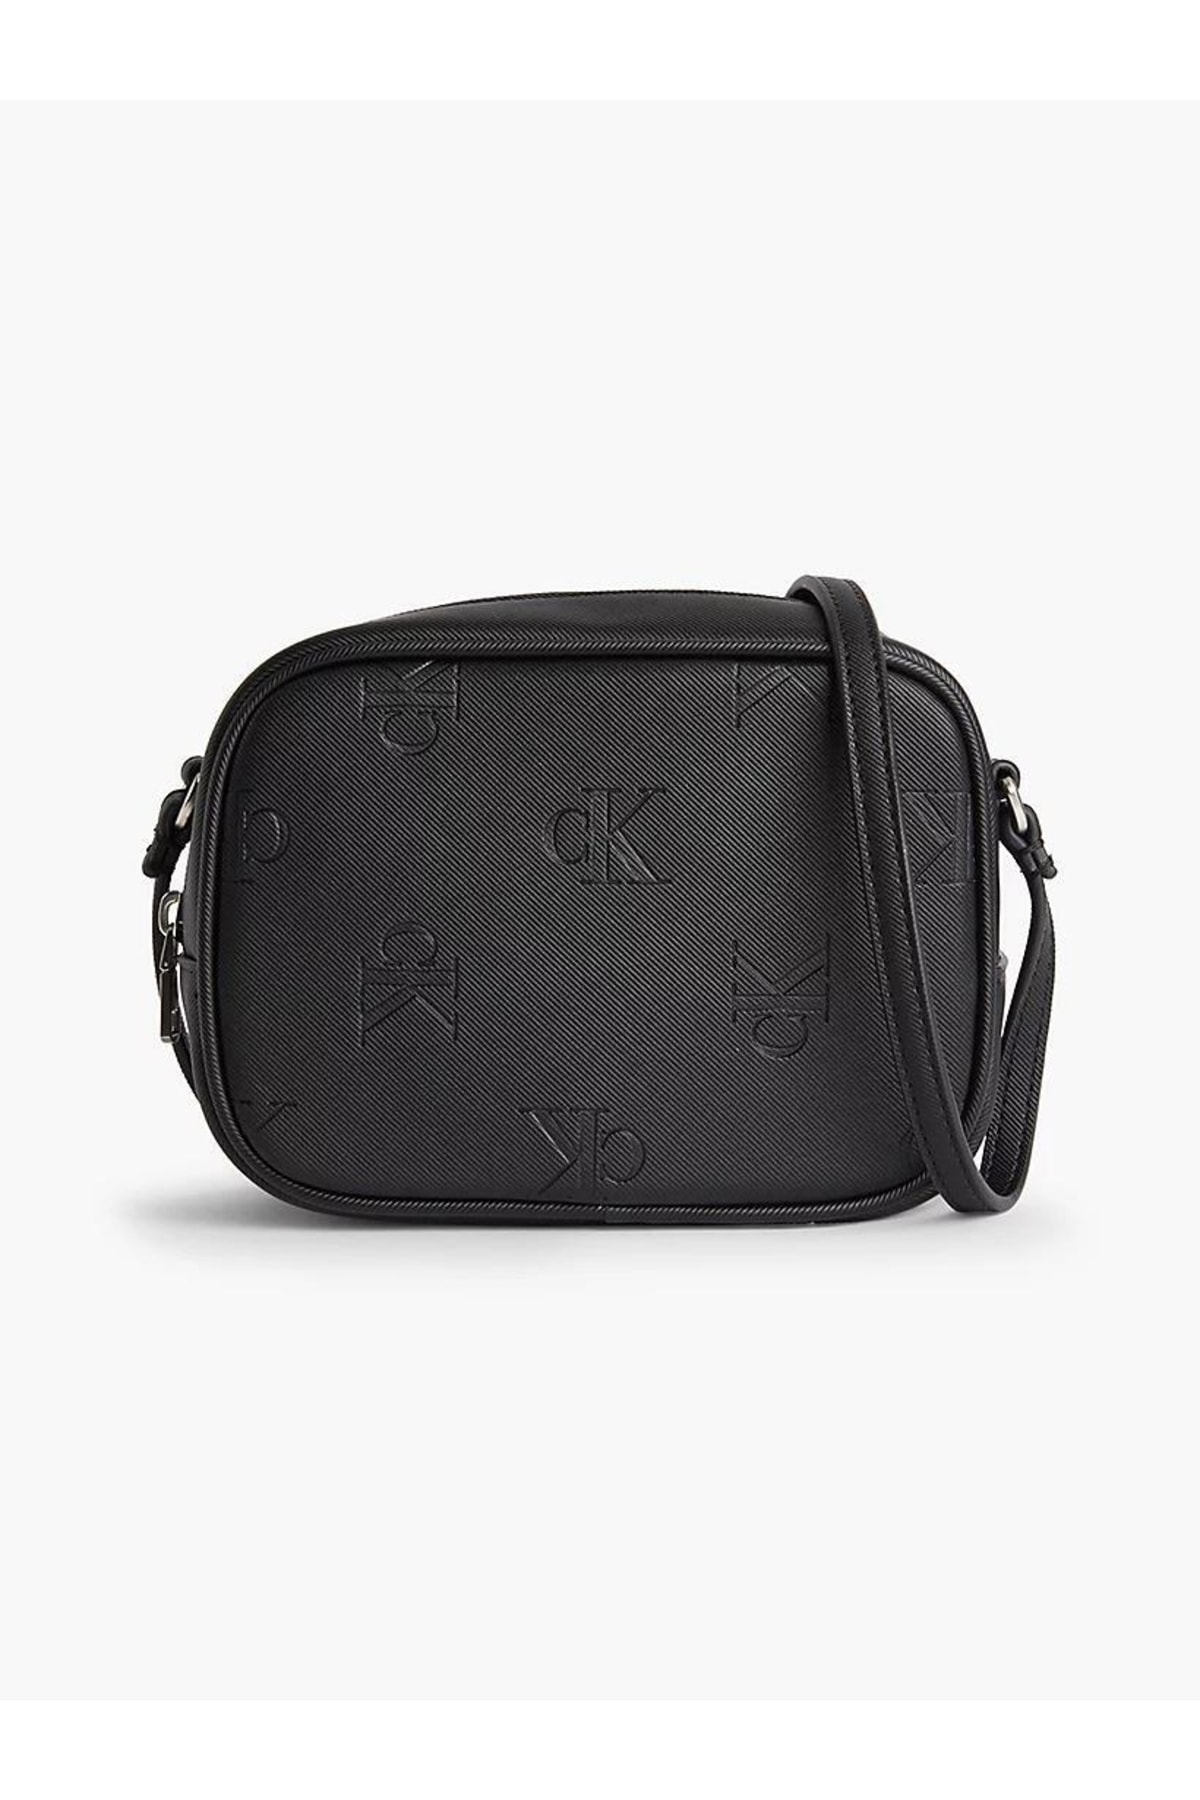 Calvin Klein Sleek Camera Bag18 Aop